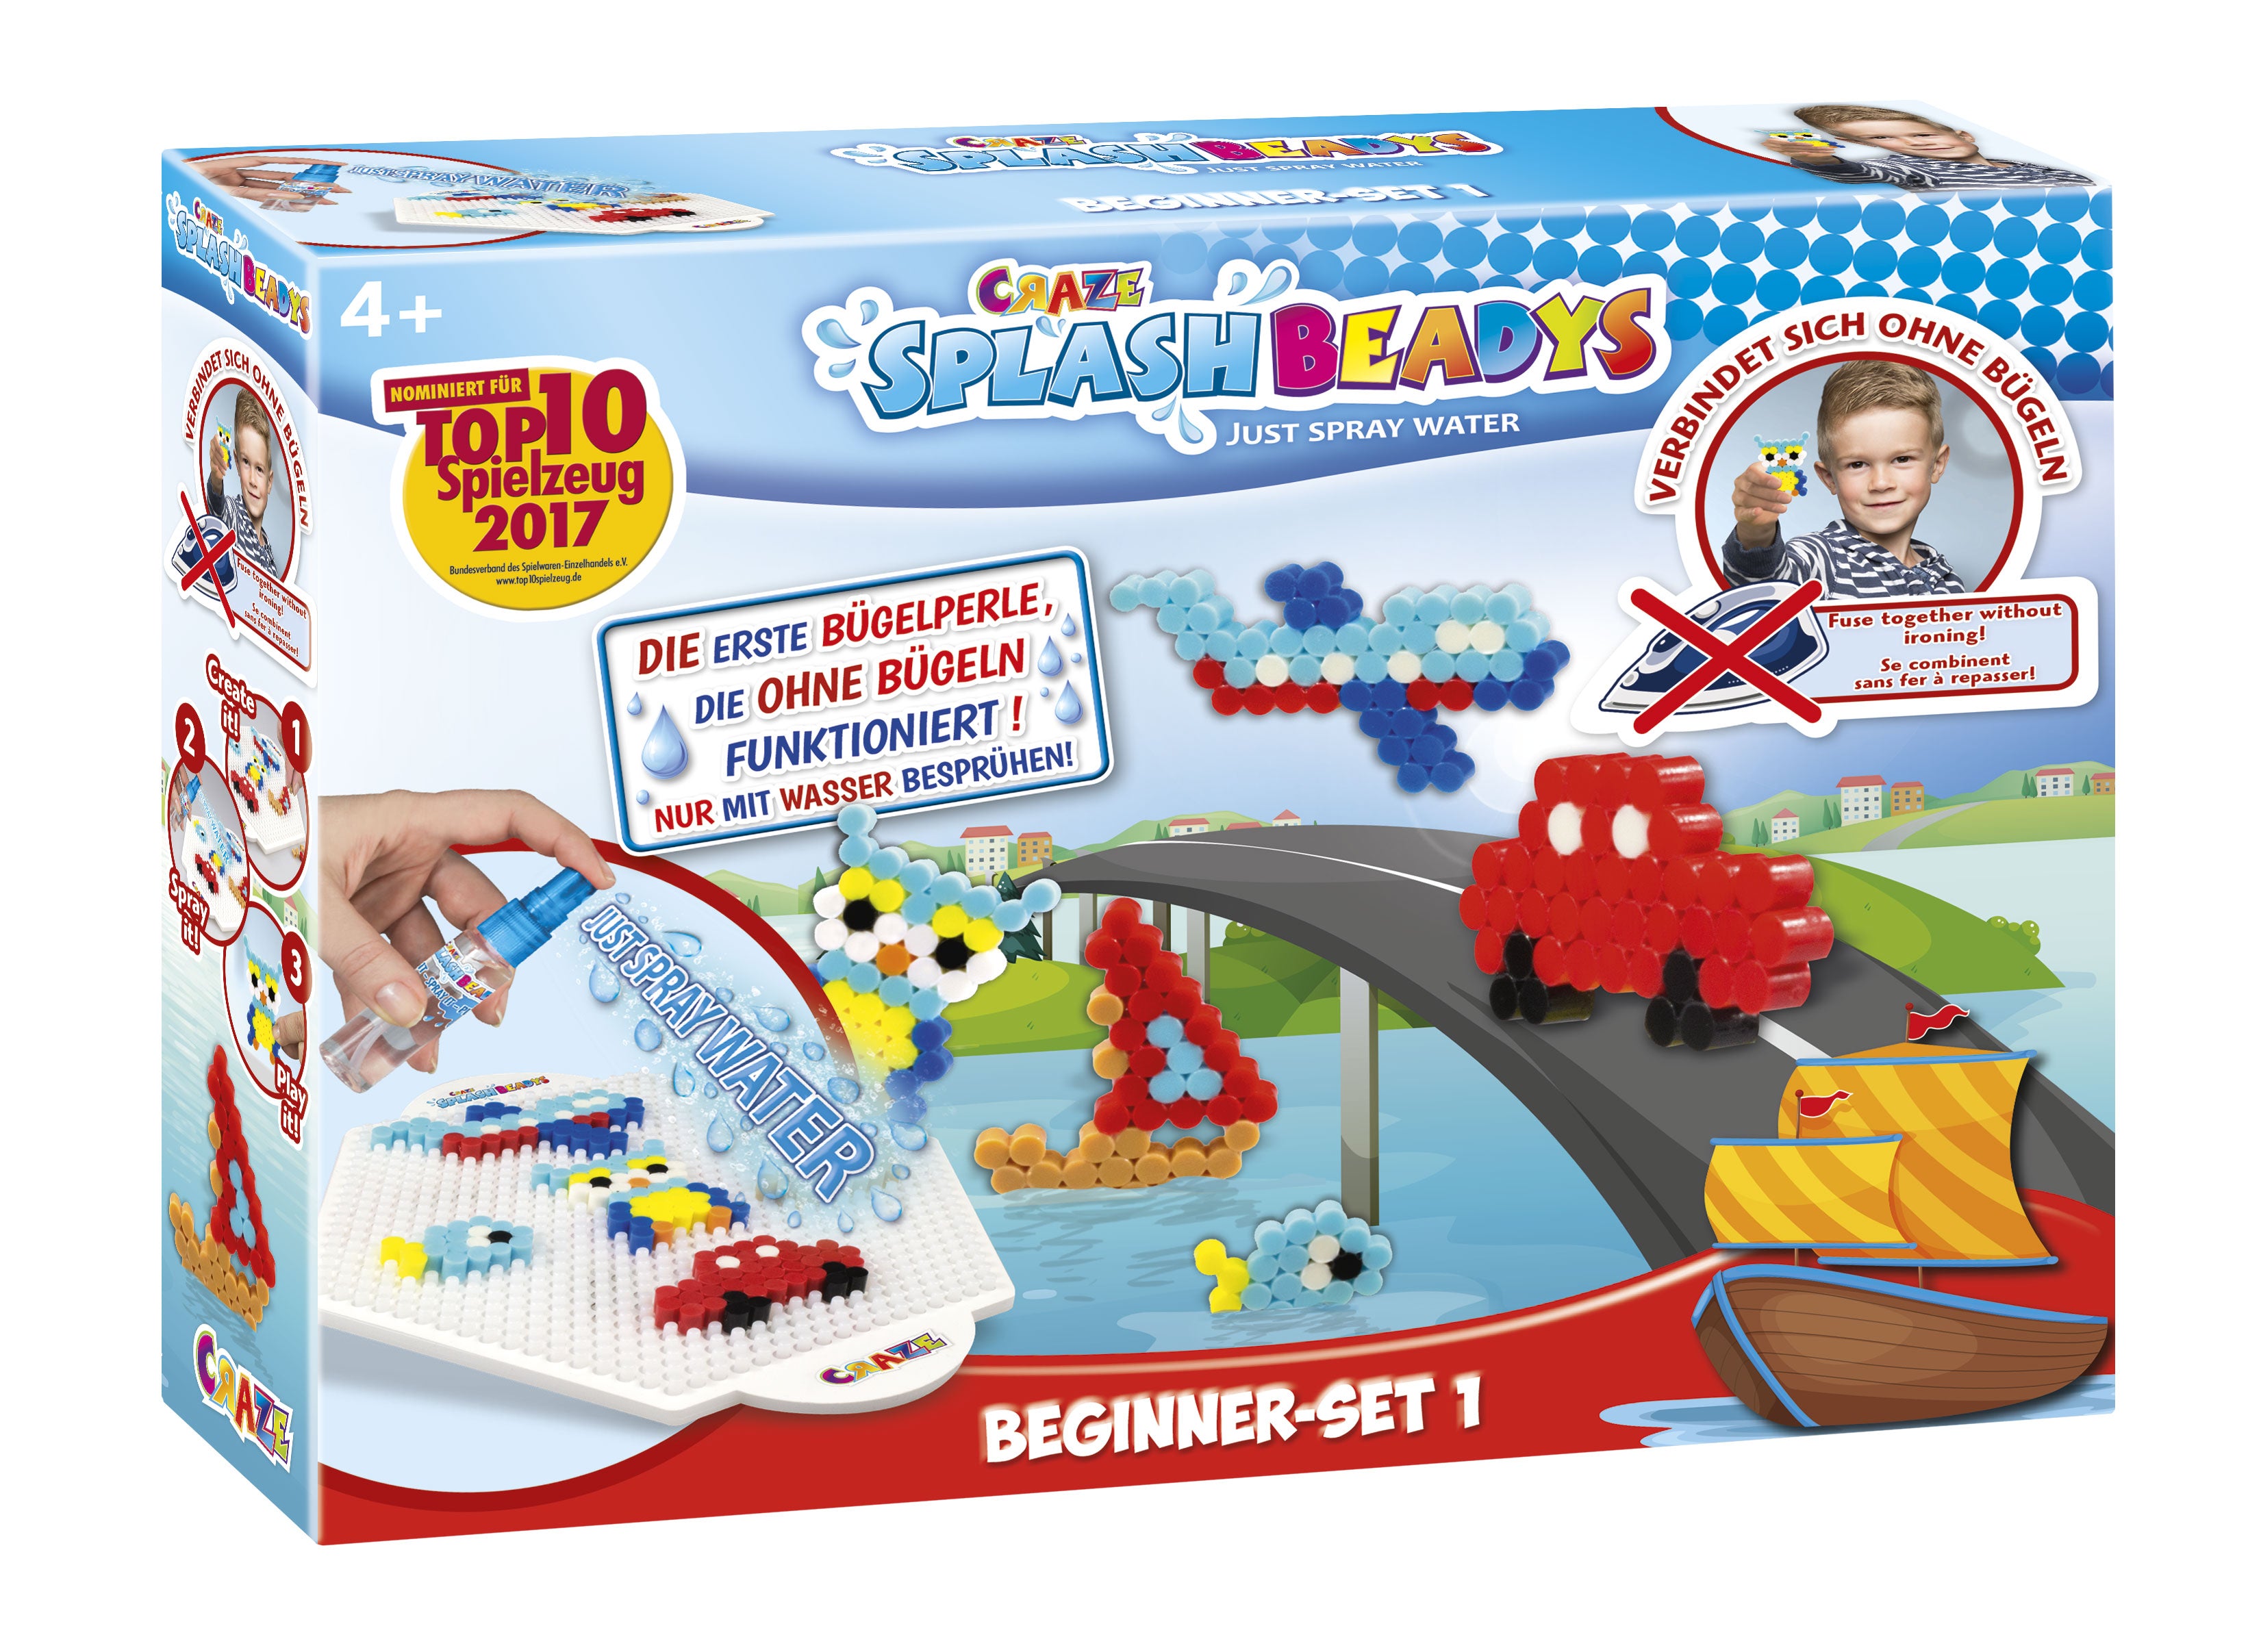 CRAZE Splash Boys 15278 Beadys – Beginner Set, Multi-Colour - Wild Willy - Toys Lebanon